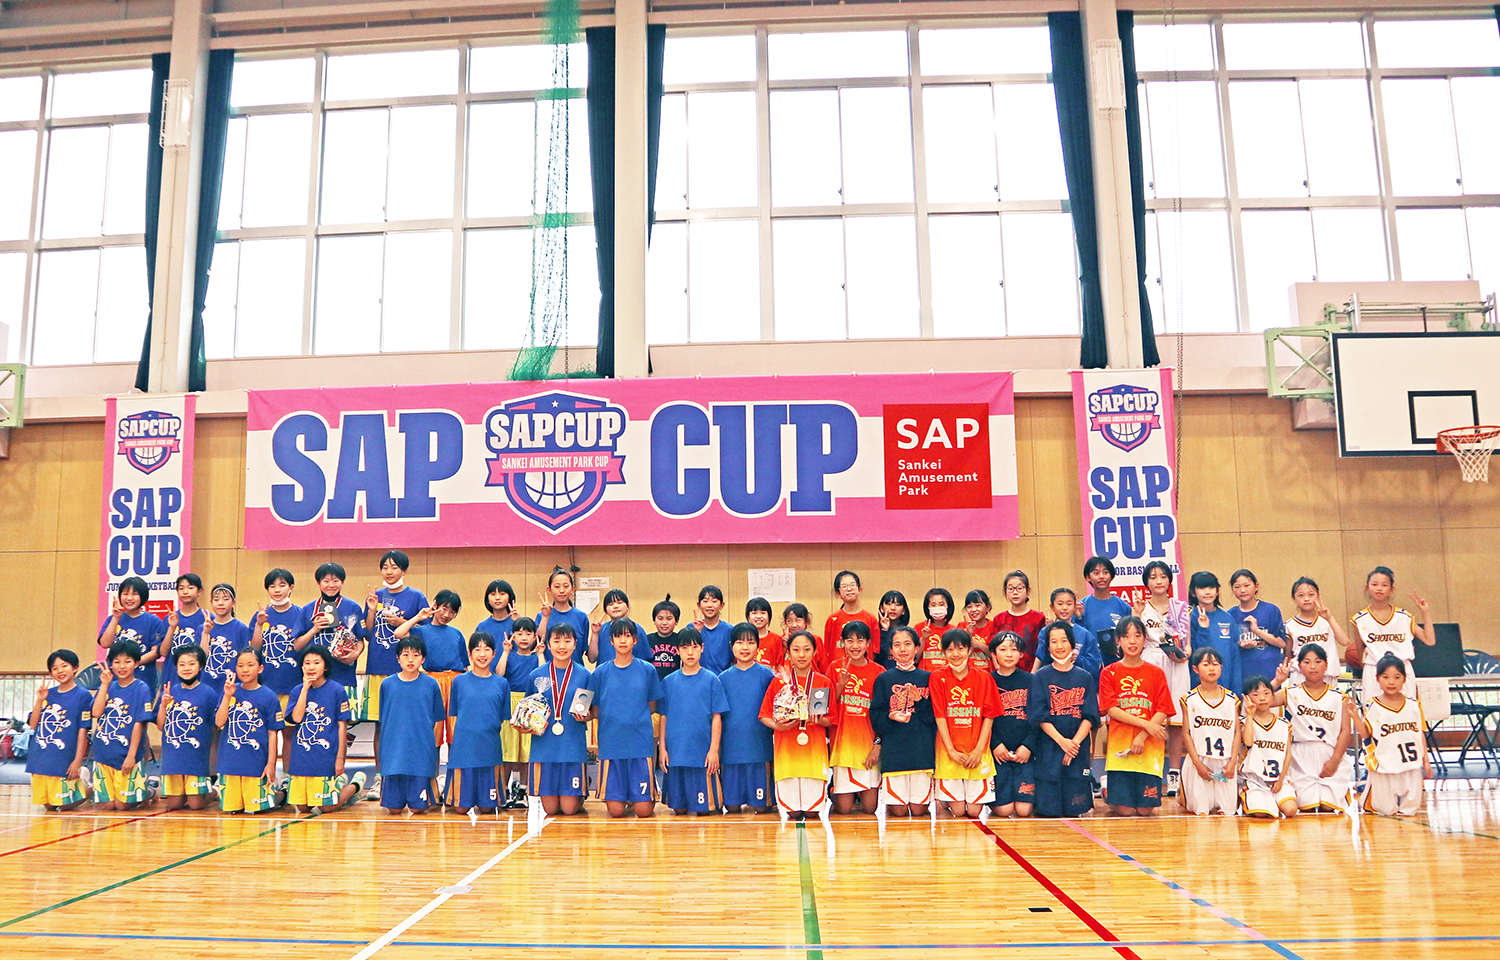 三恵グループ主催「SAP CUP in S-LAB KYOTO」
4チーム・計60名のプレイヤーによるアツい試合を5/20に開催